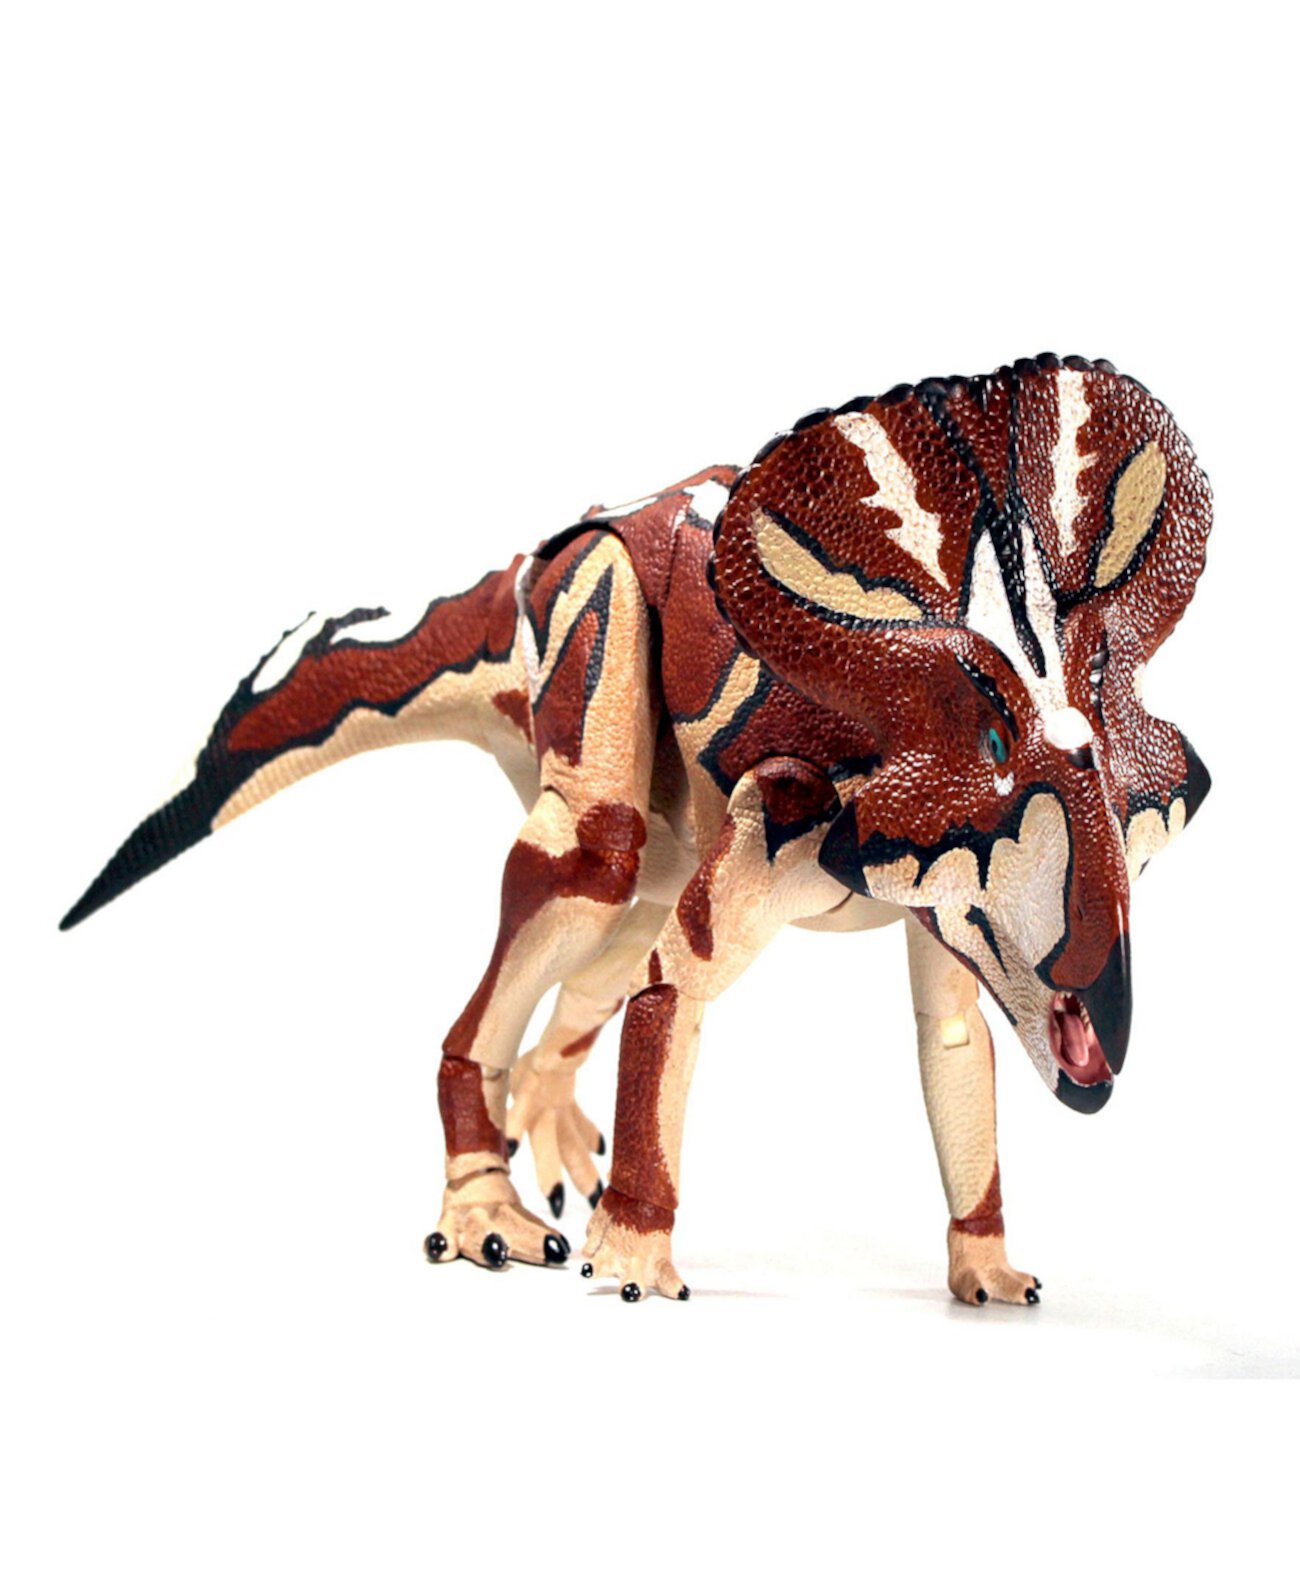 Фигурка динозавра Протоцератопс Эндрюси Beasts of the Mesozoic